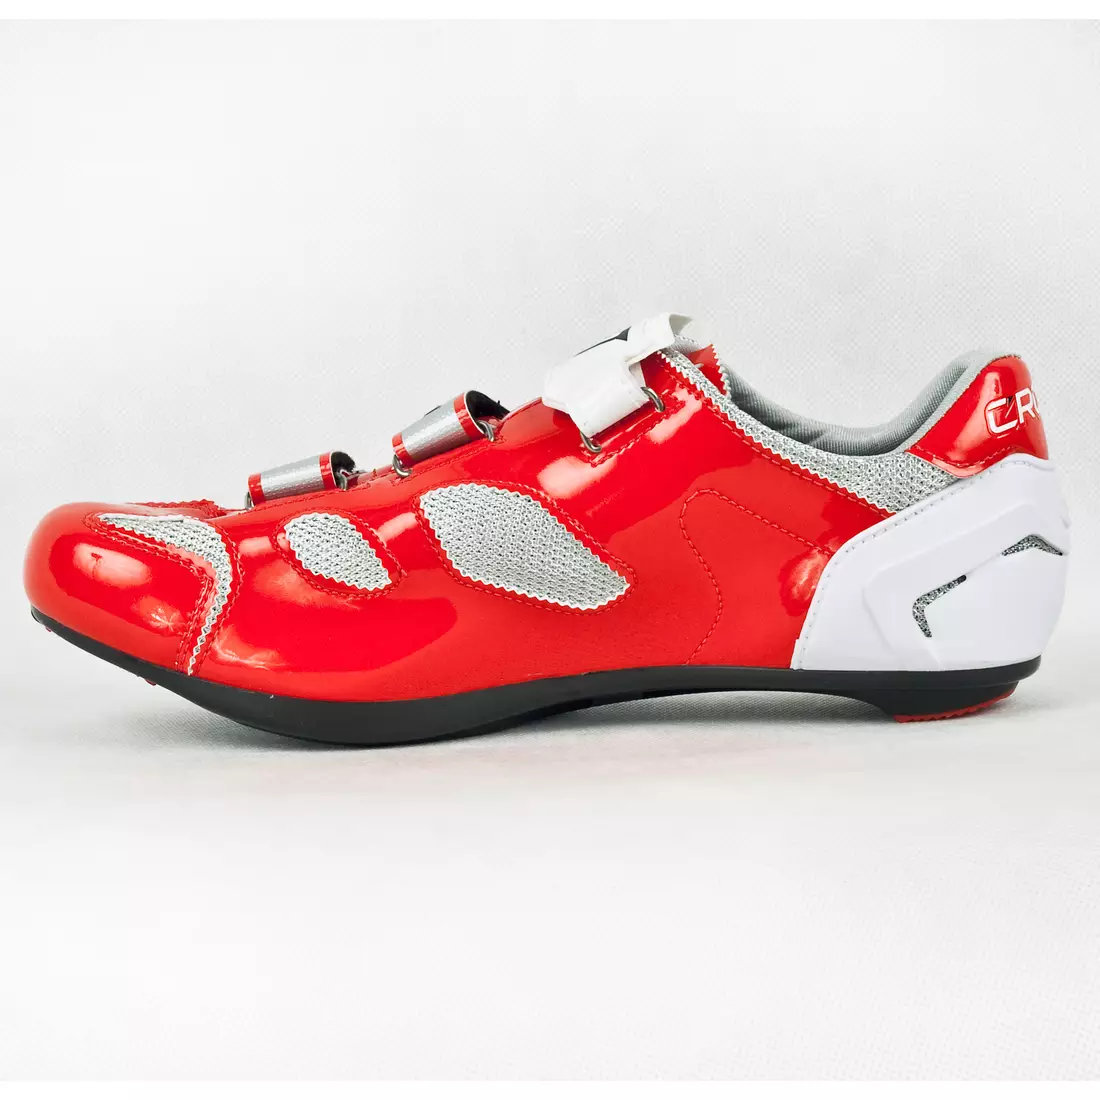 CRONO CLONE NYLON - silniční cyklistické boty - barva: Červená